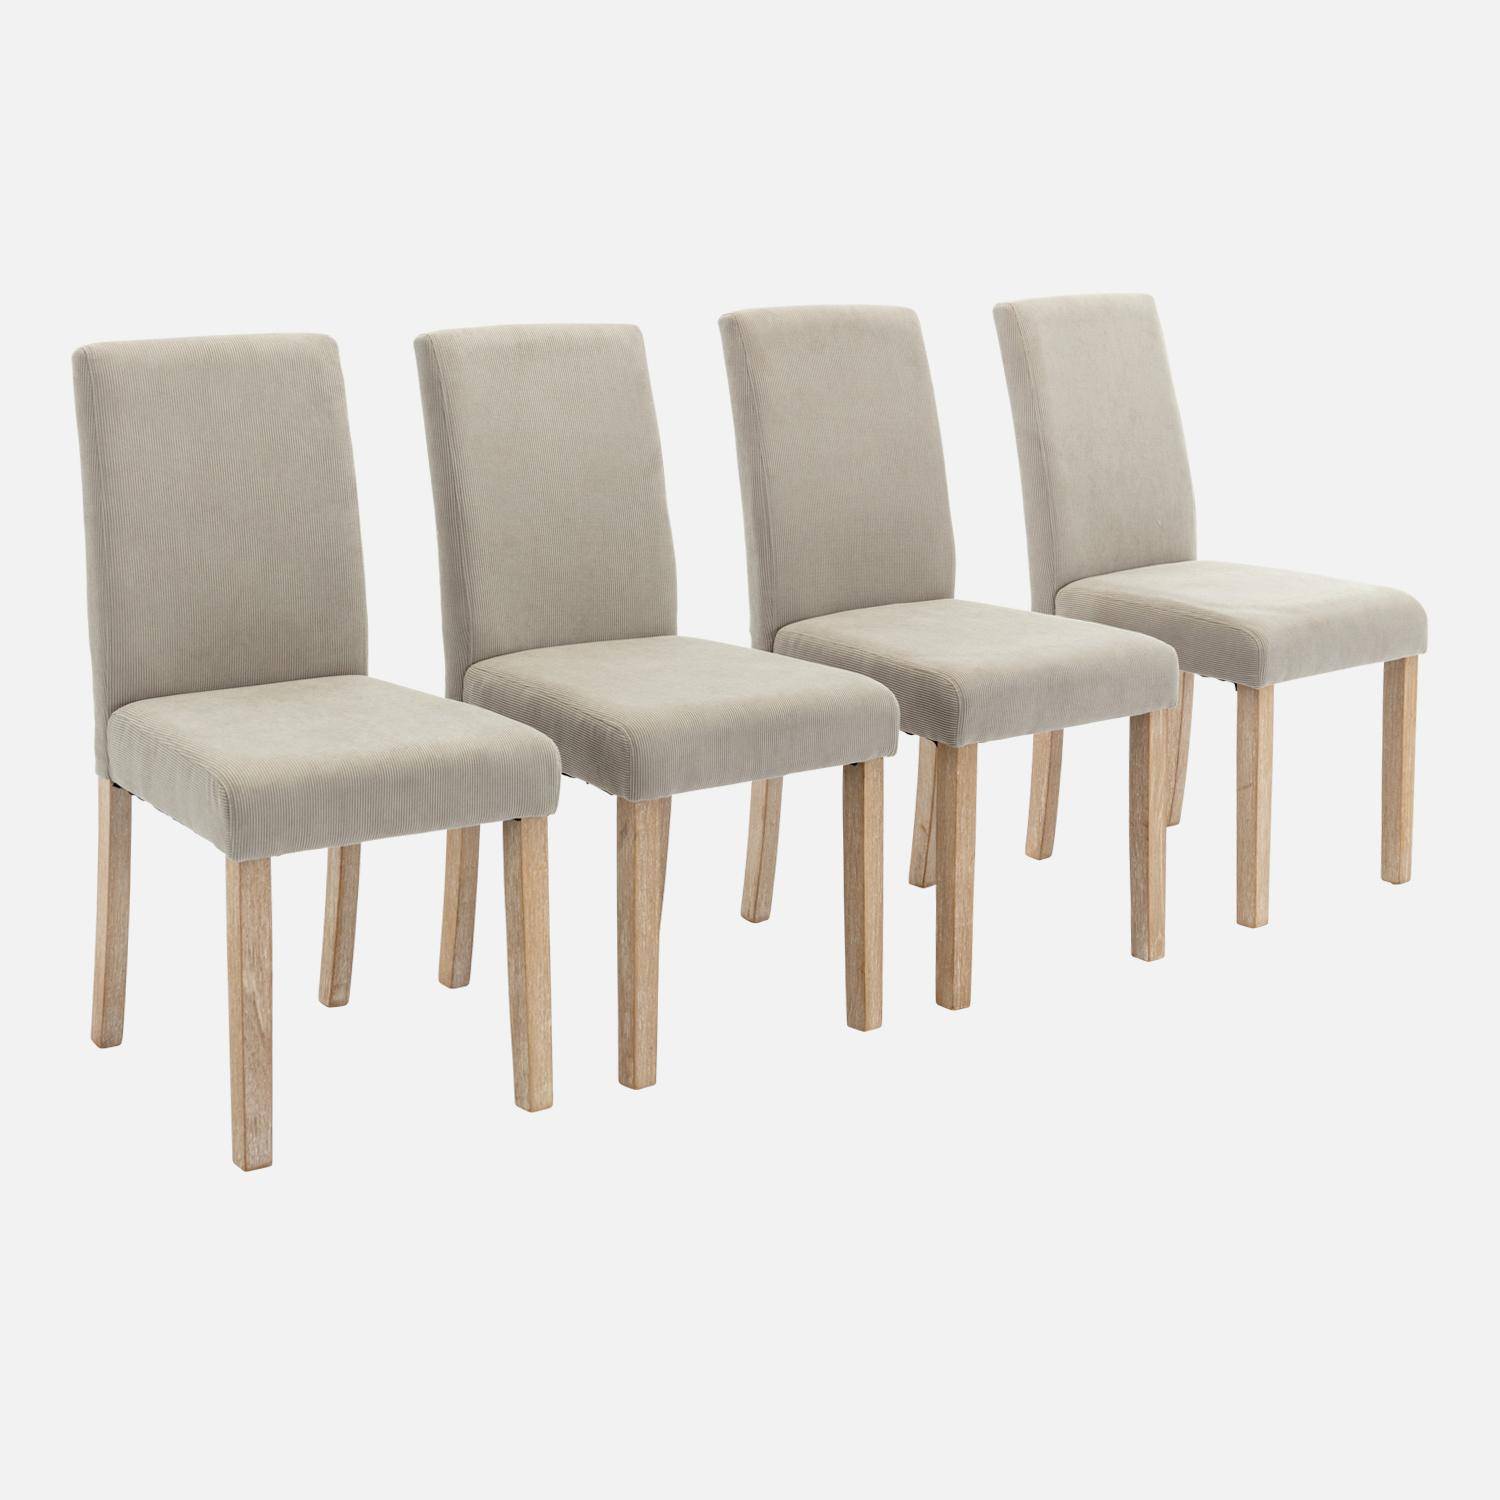 Set van 4 grijze corduroy stoelen, Rita, met witte poten van heveahout Photo3